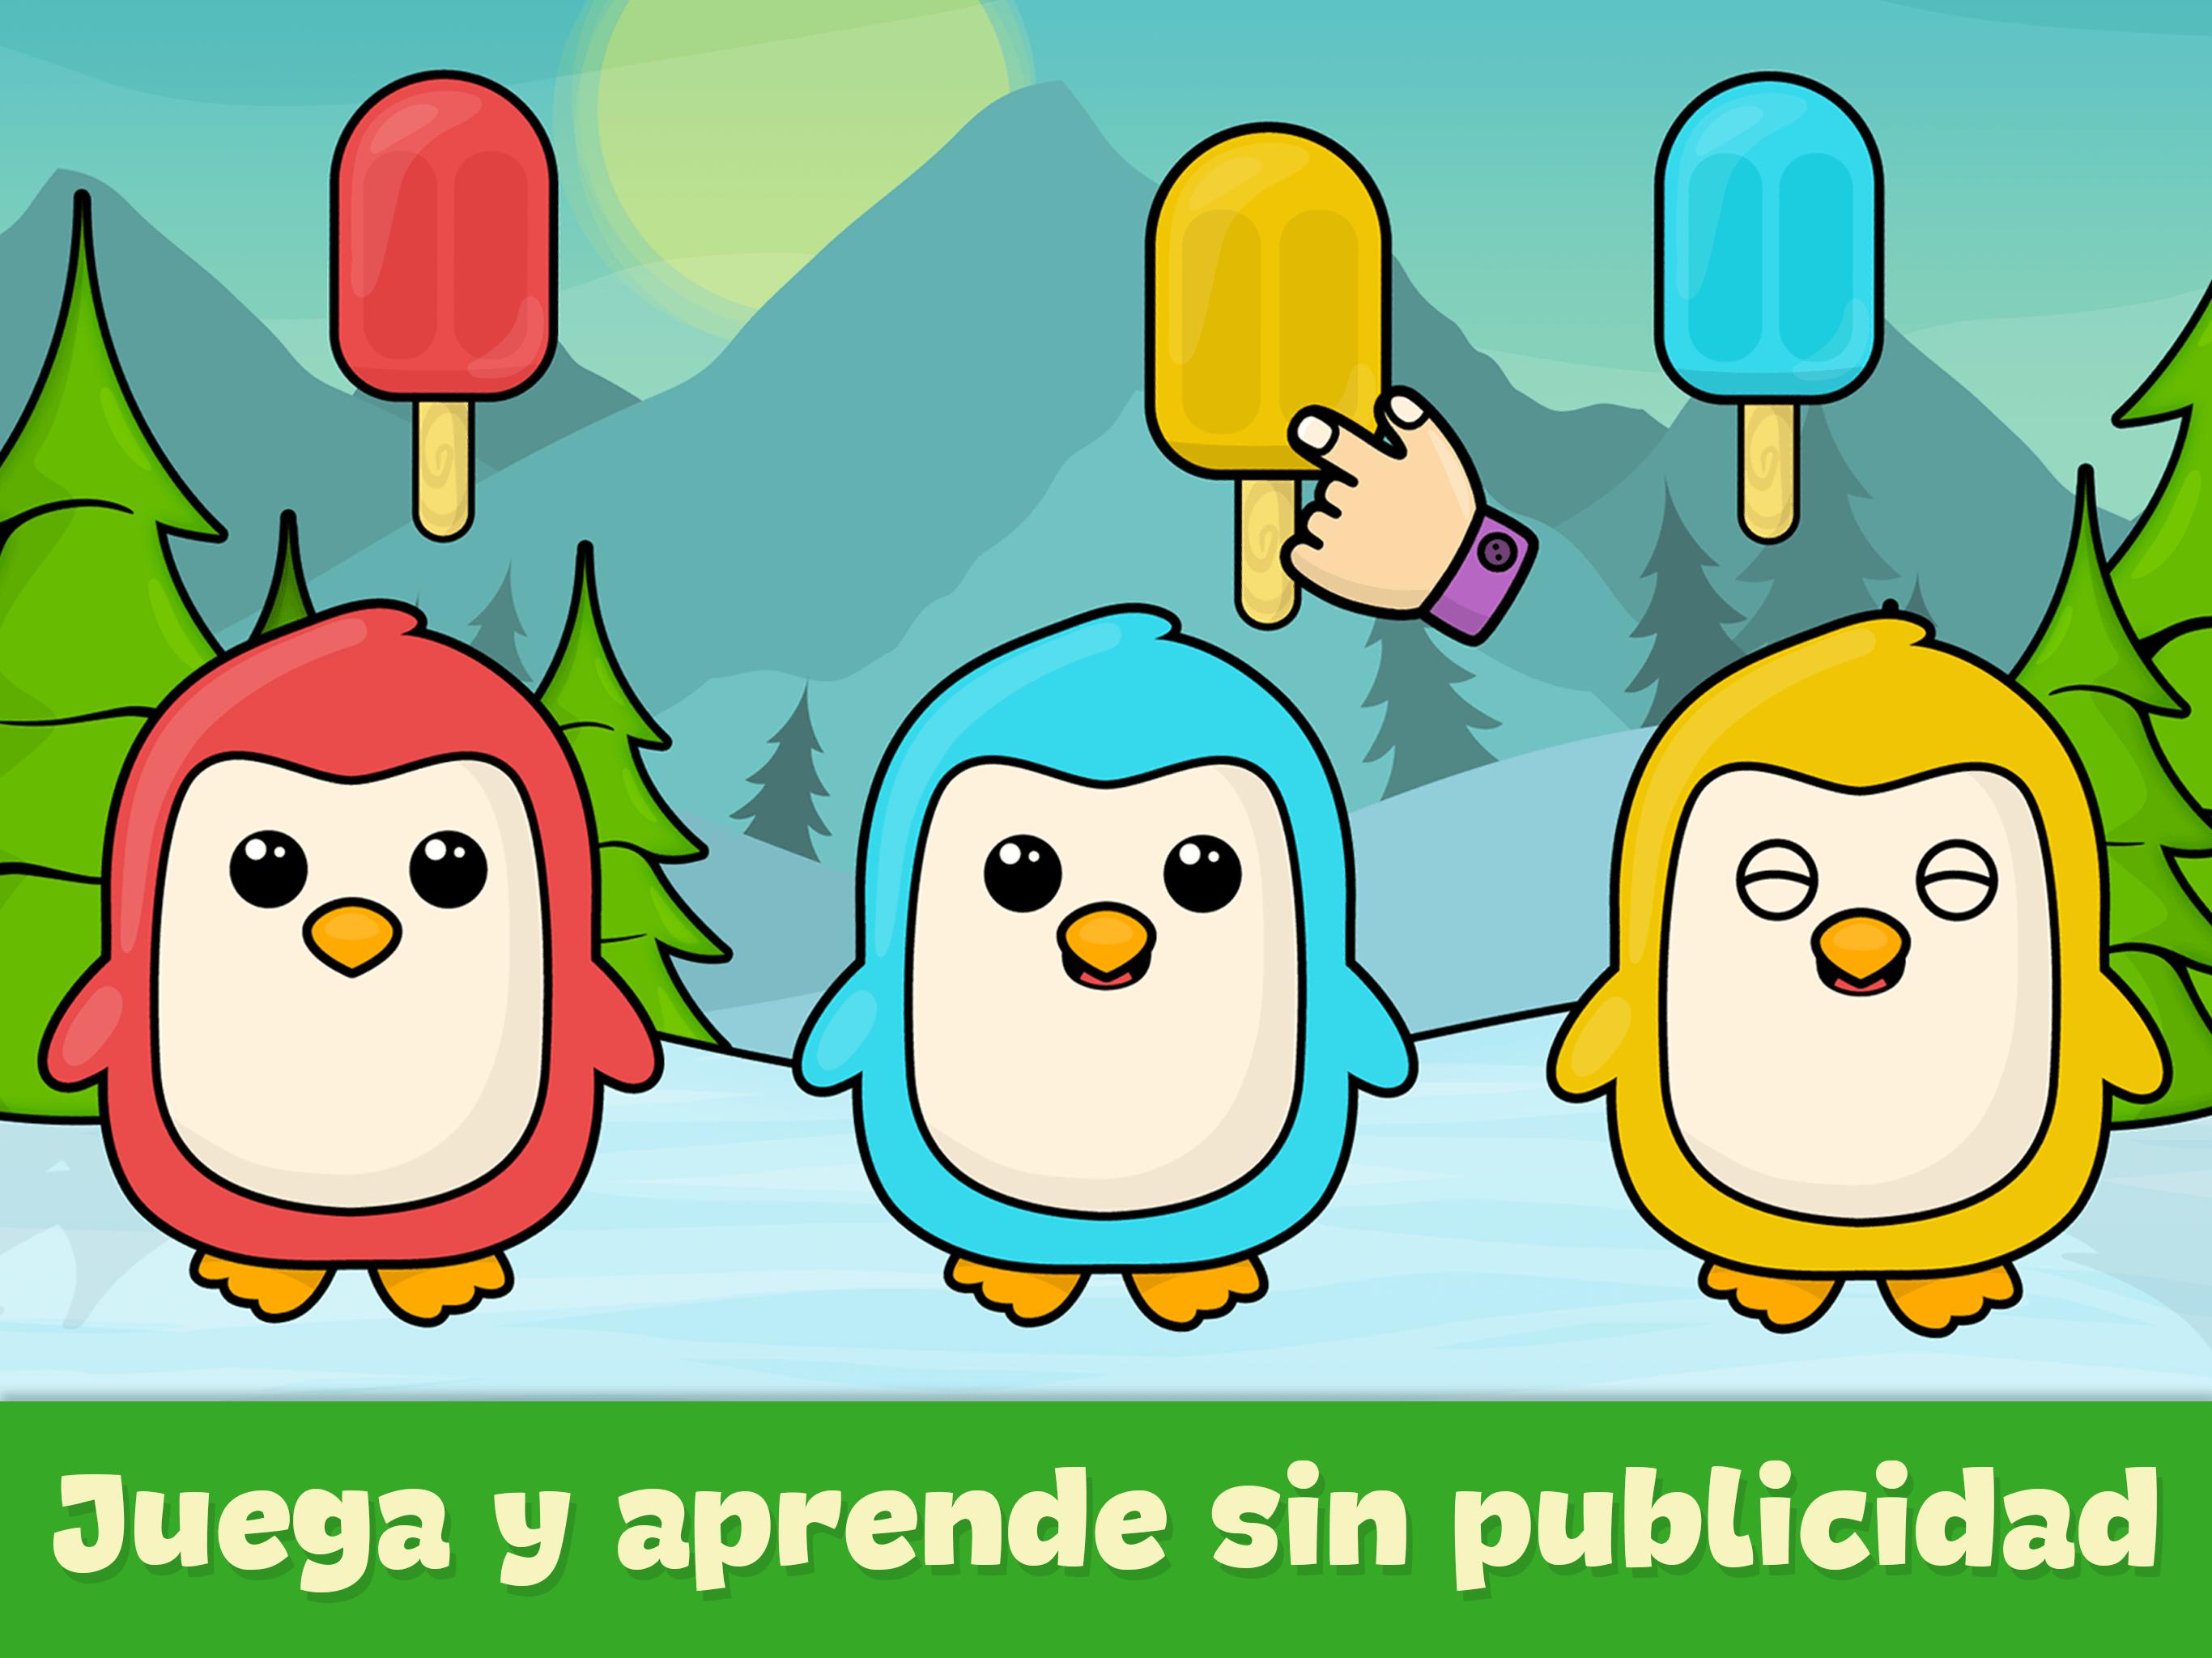 Bimi Boo Juegos para Guardería for Android - APK Download